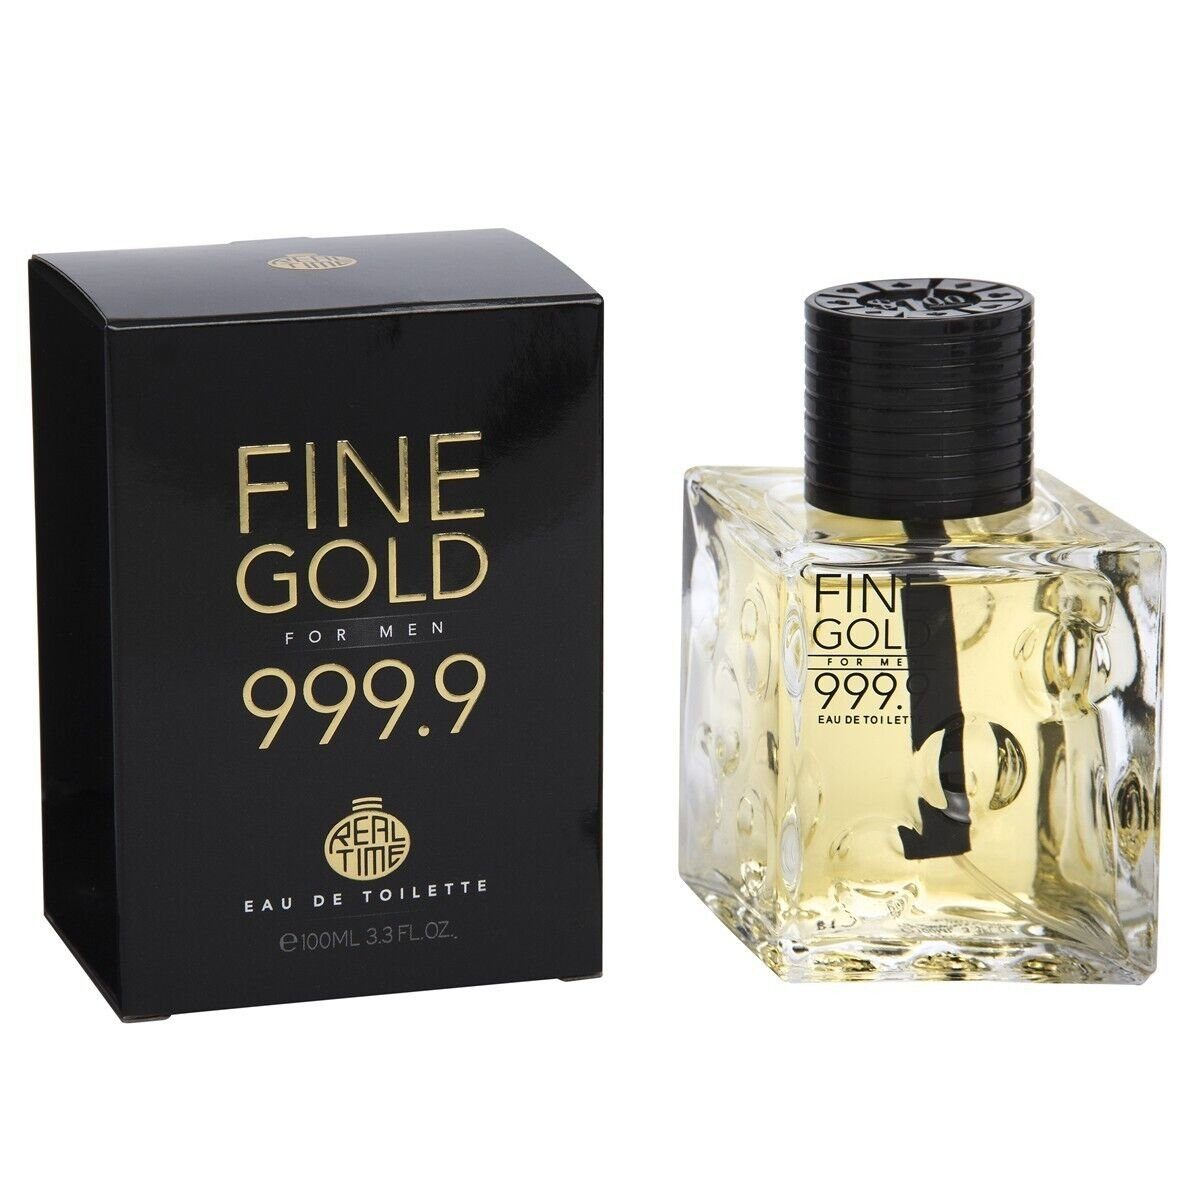 RT Eau de Toilette FINE GOLD 999.9 FOR MEN - Parfüm für Herren - süß-würziger Duft, - 100ml - Duftzwilling / Dupe Sale